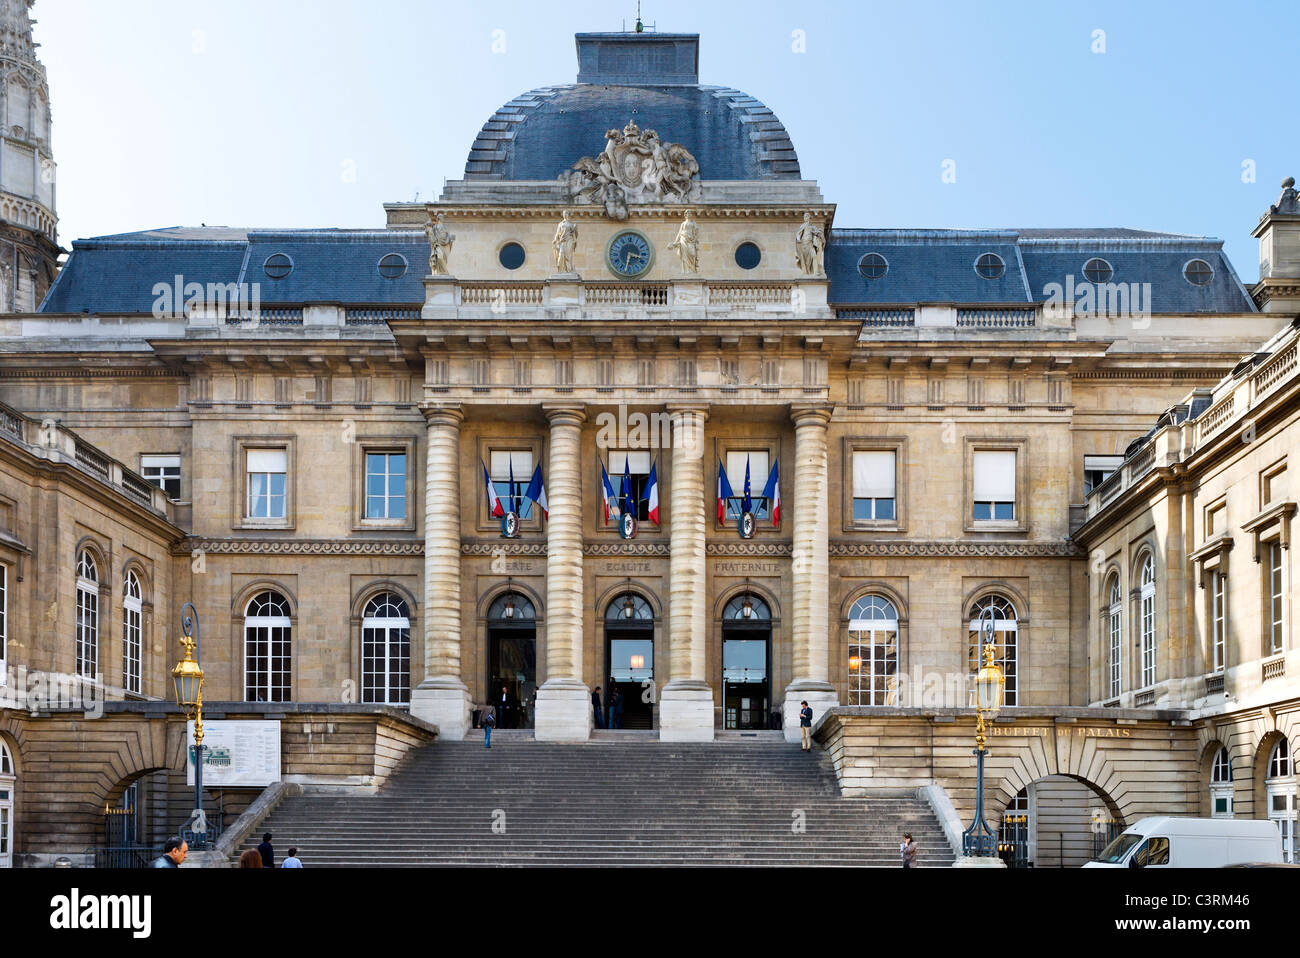 The Palais de Justice, Ile de la Cite, Paris, France Stock Photo